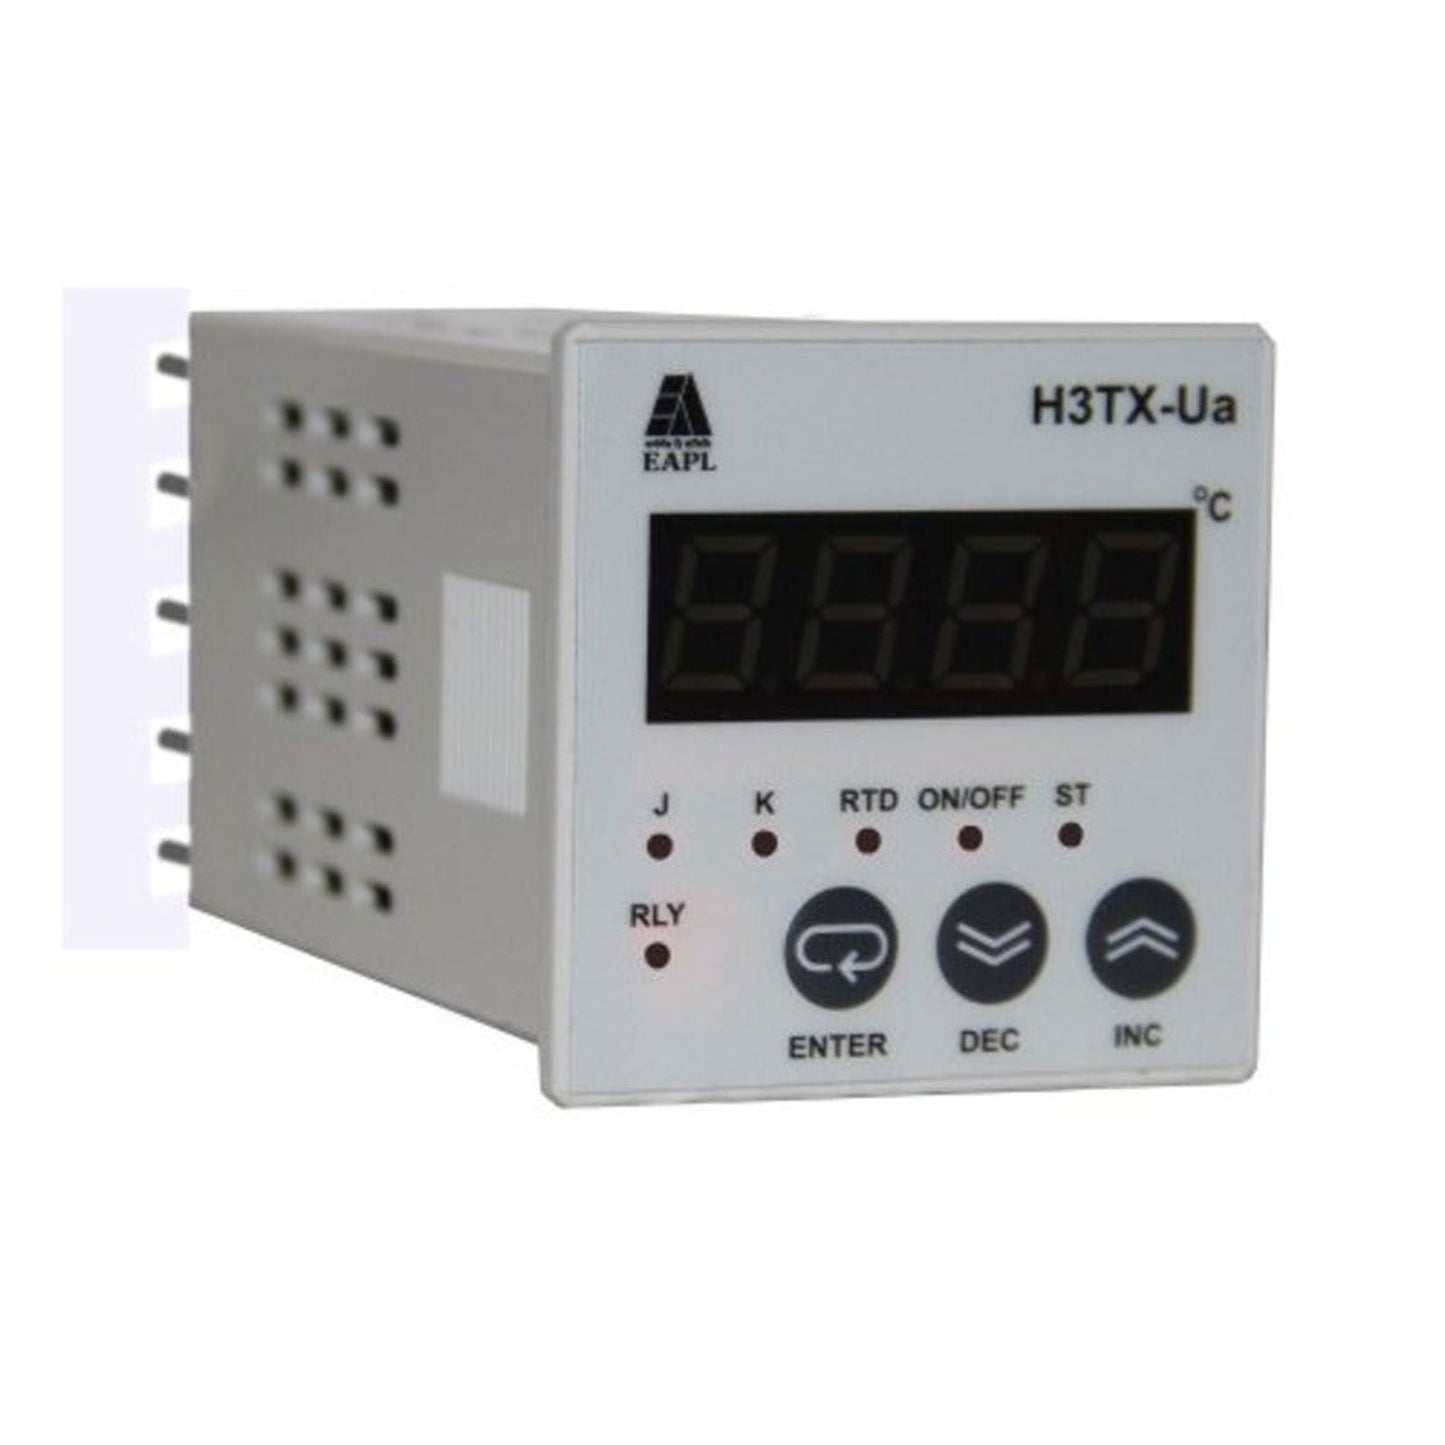 EAPL H3TX-Ua Temperature Controller 48*48 - voltkart - EAPL - 